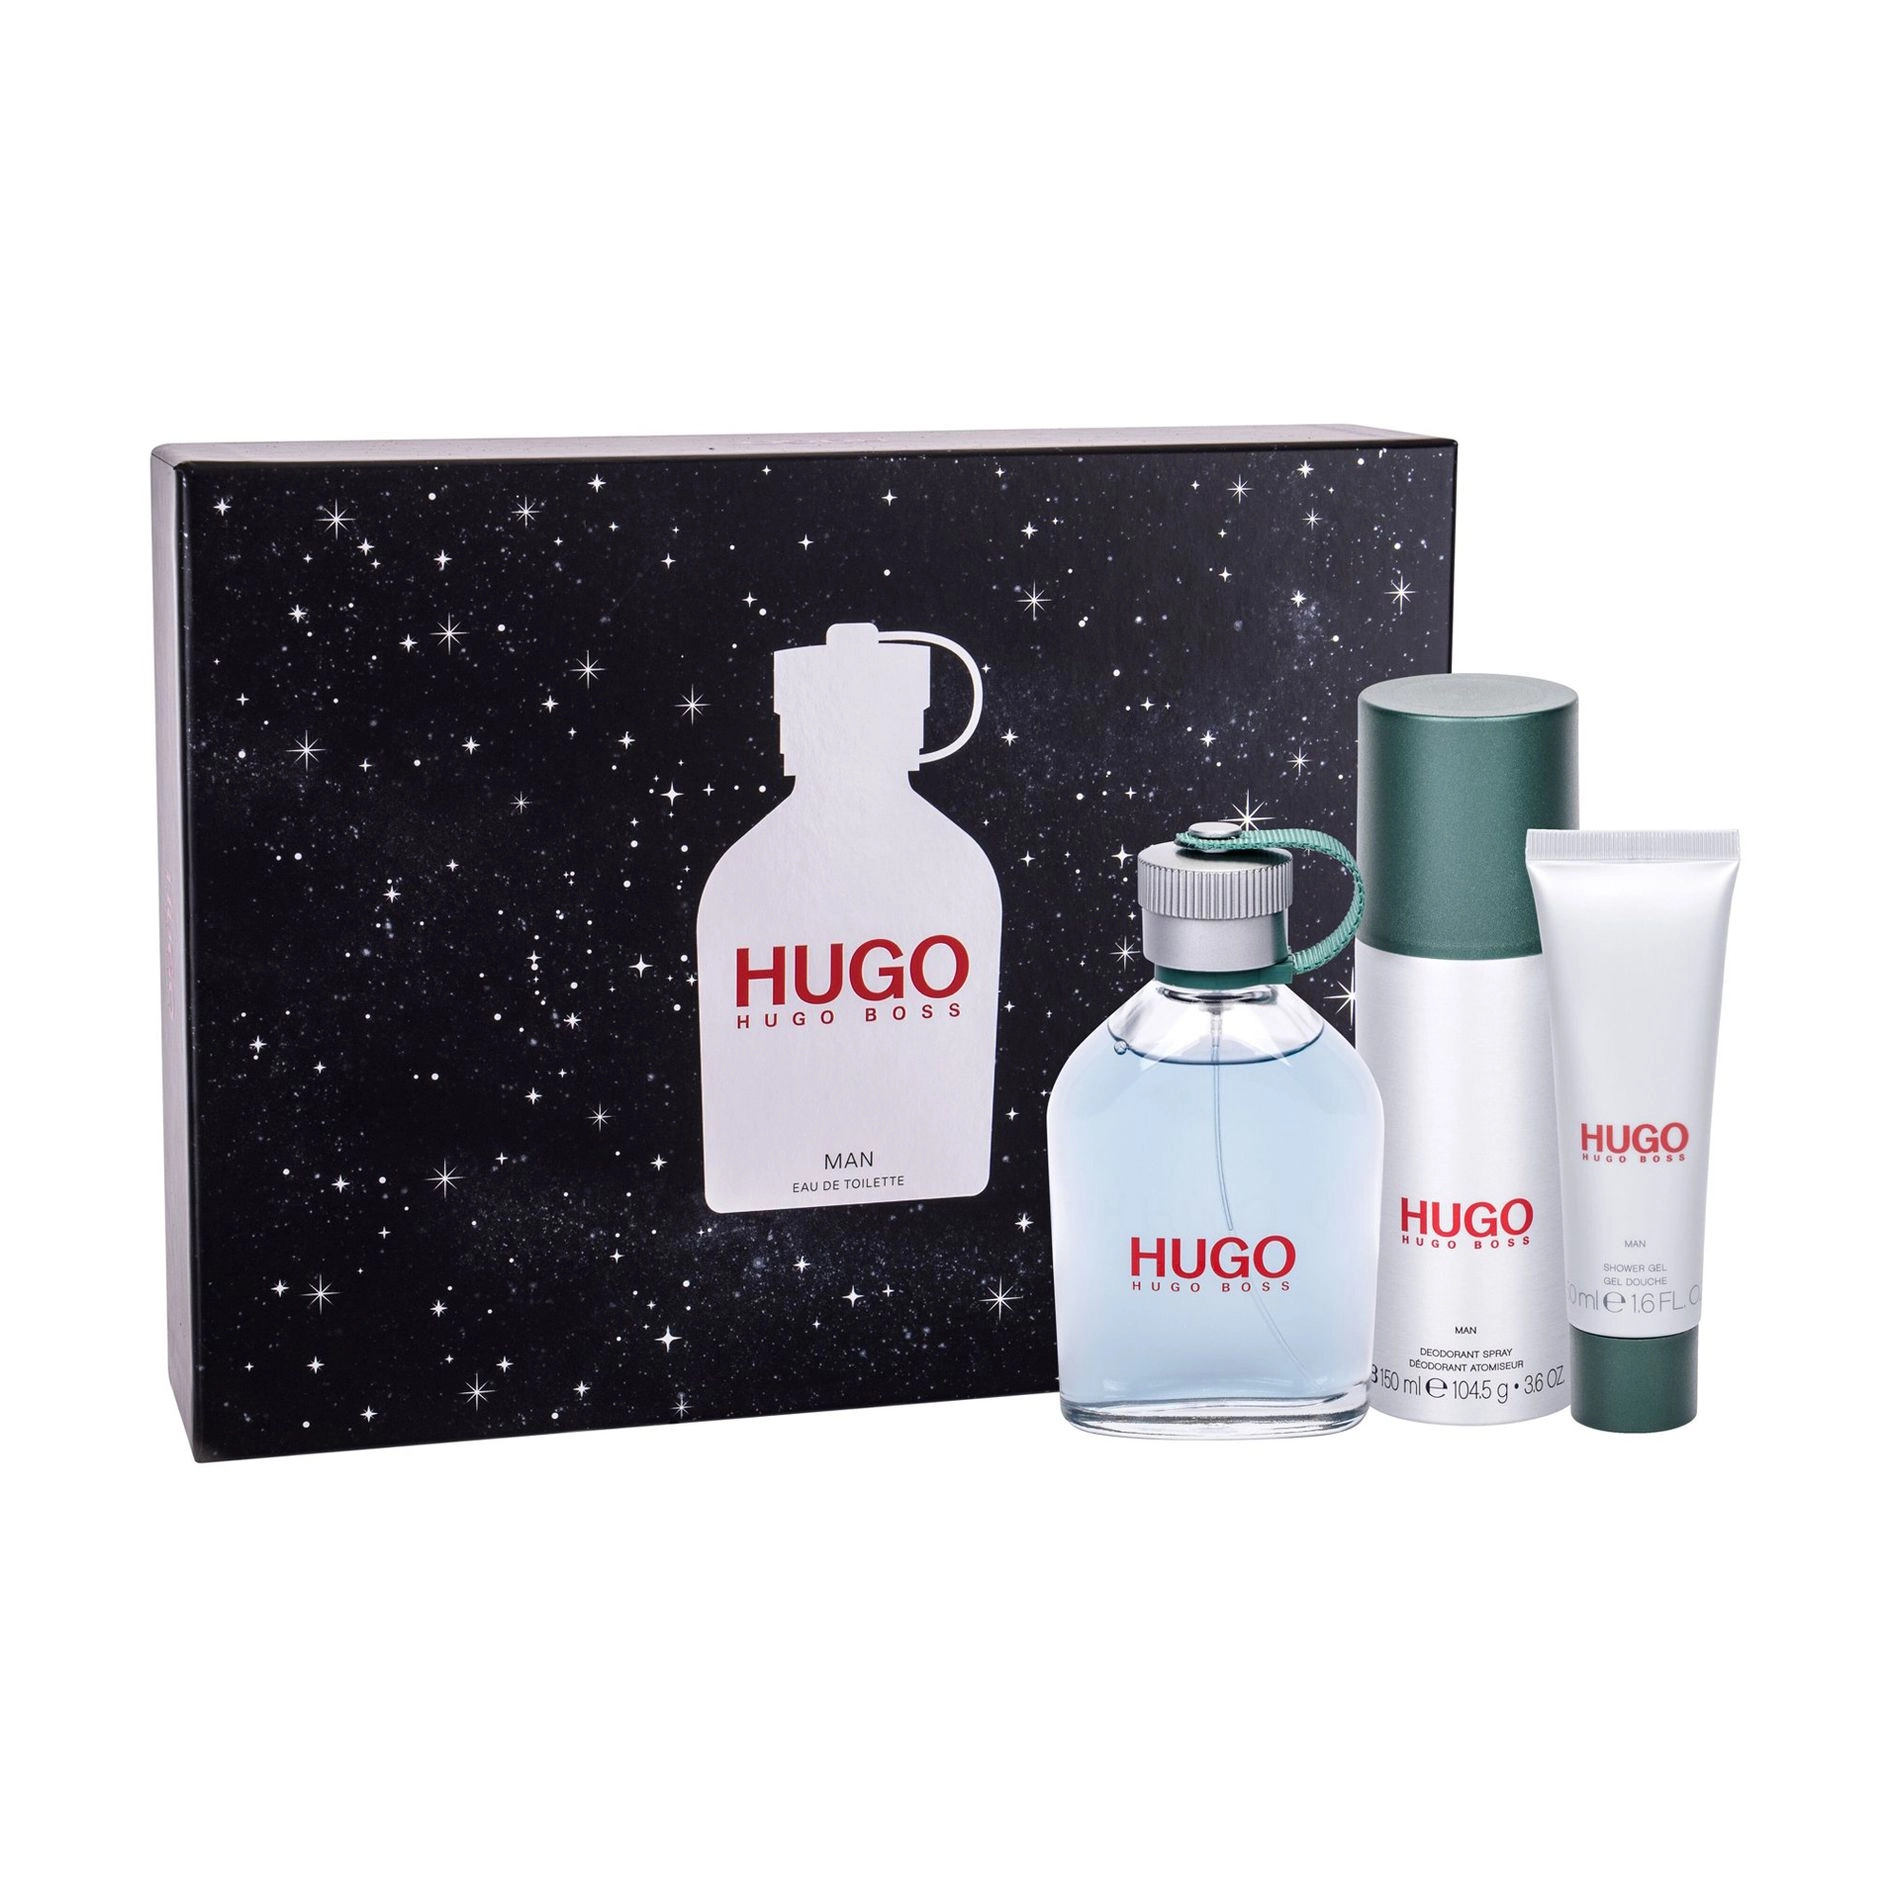 Hugo Boss Парфюмированный набор мужской Hugo Man (туалетная вода, 125 мл + гель для душа, 50 мл + дезодорант-спрей, 150 мл) - фото N2